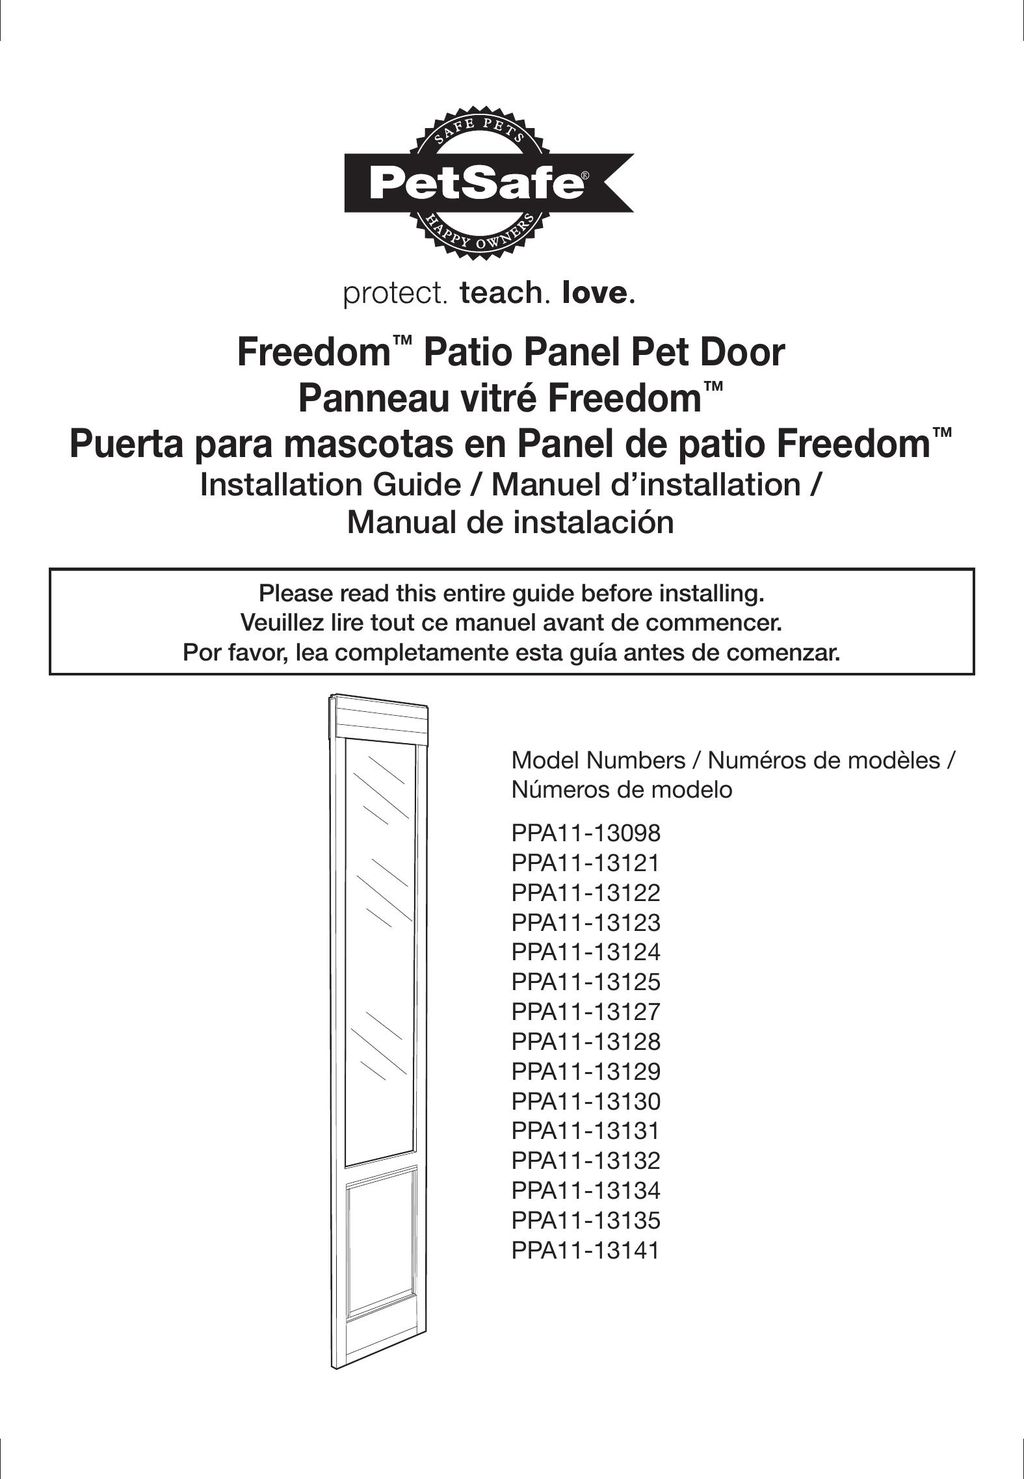 Petsafe PPA11-13123 Door User Manual